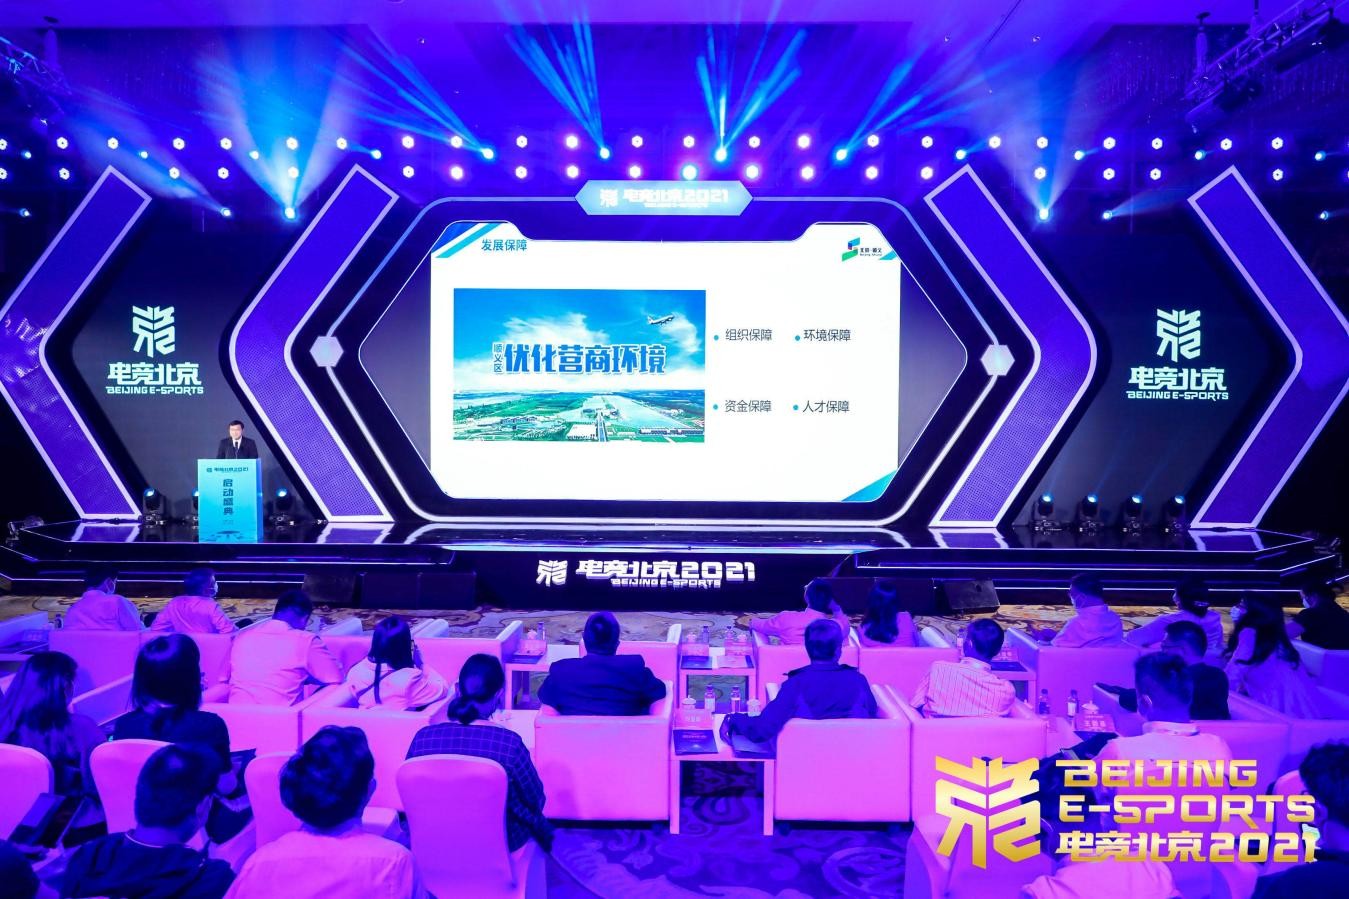 “电竞北京2021”全面启动 倡议协同促进电竞产业健康繁荣发展